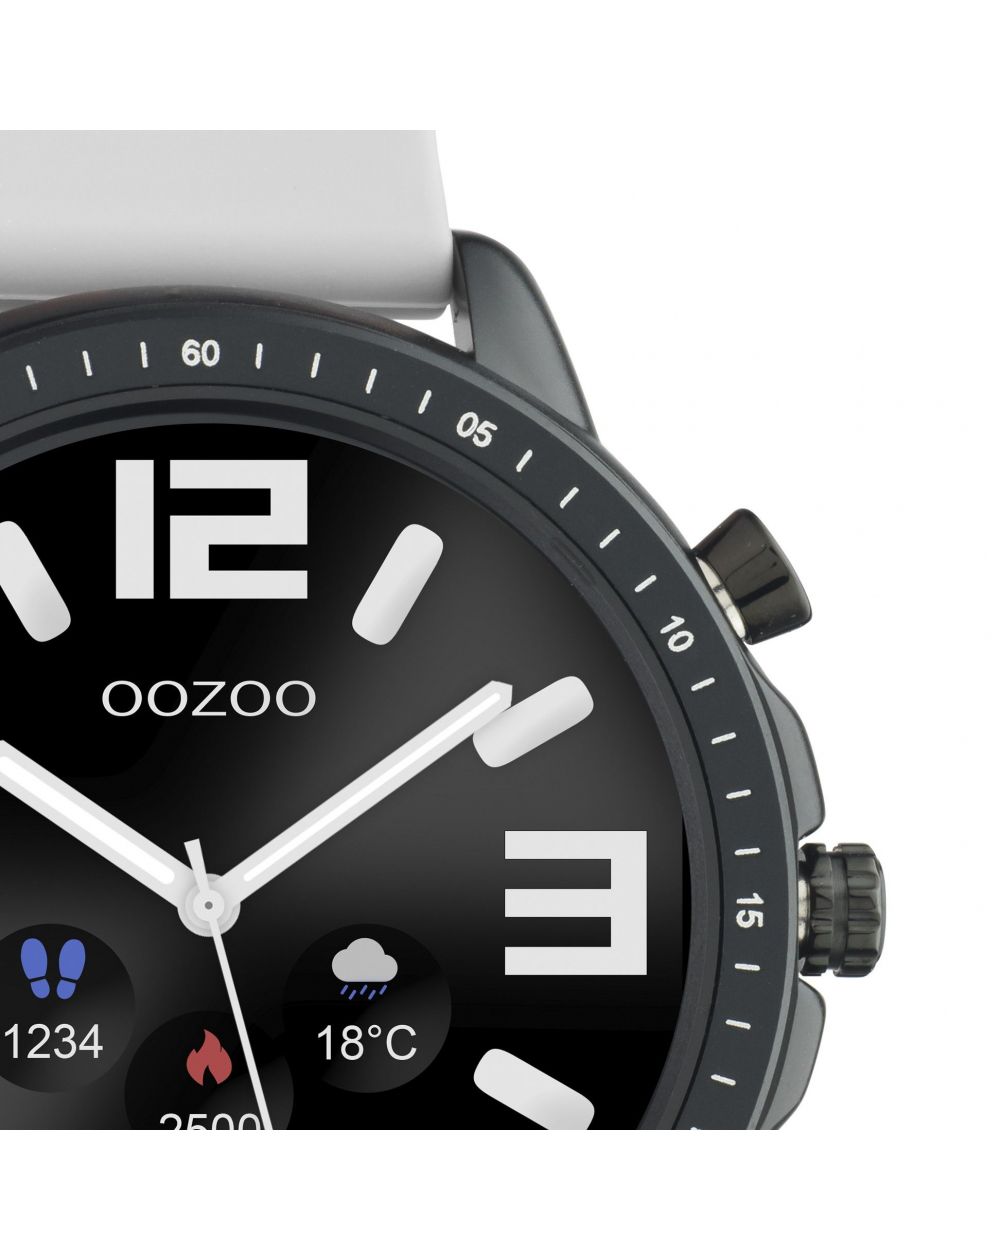 Montre Oozoo Q00328 - Smartwatch - Marque OOZOO - Livraison gratuite